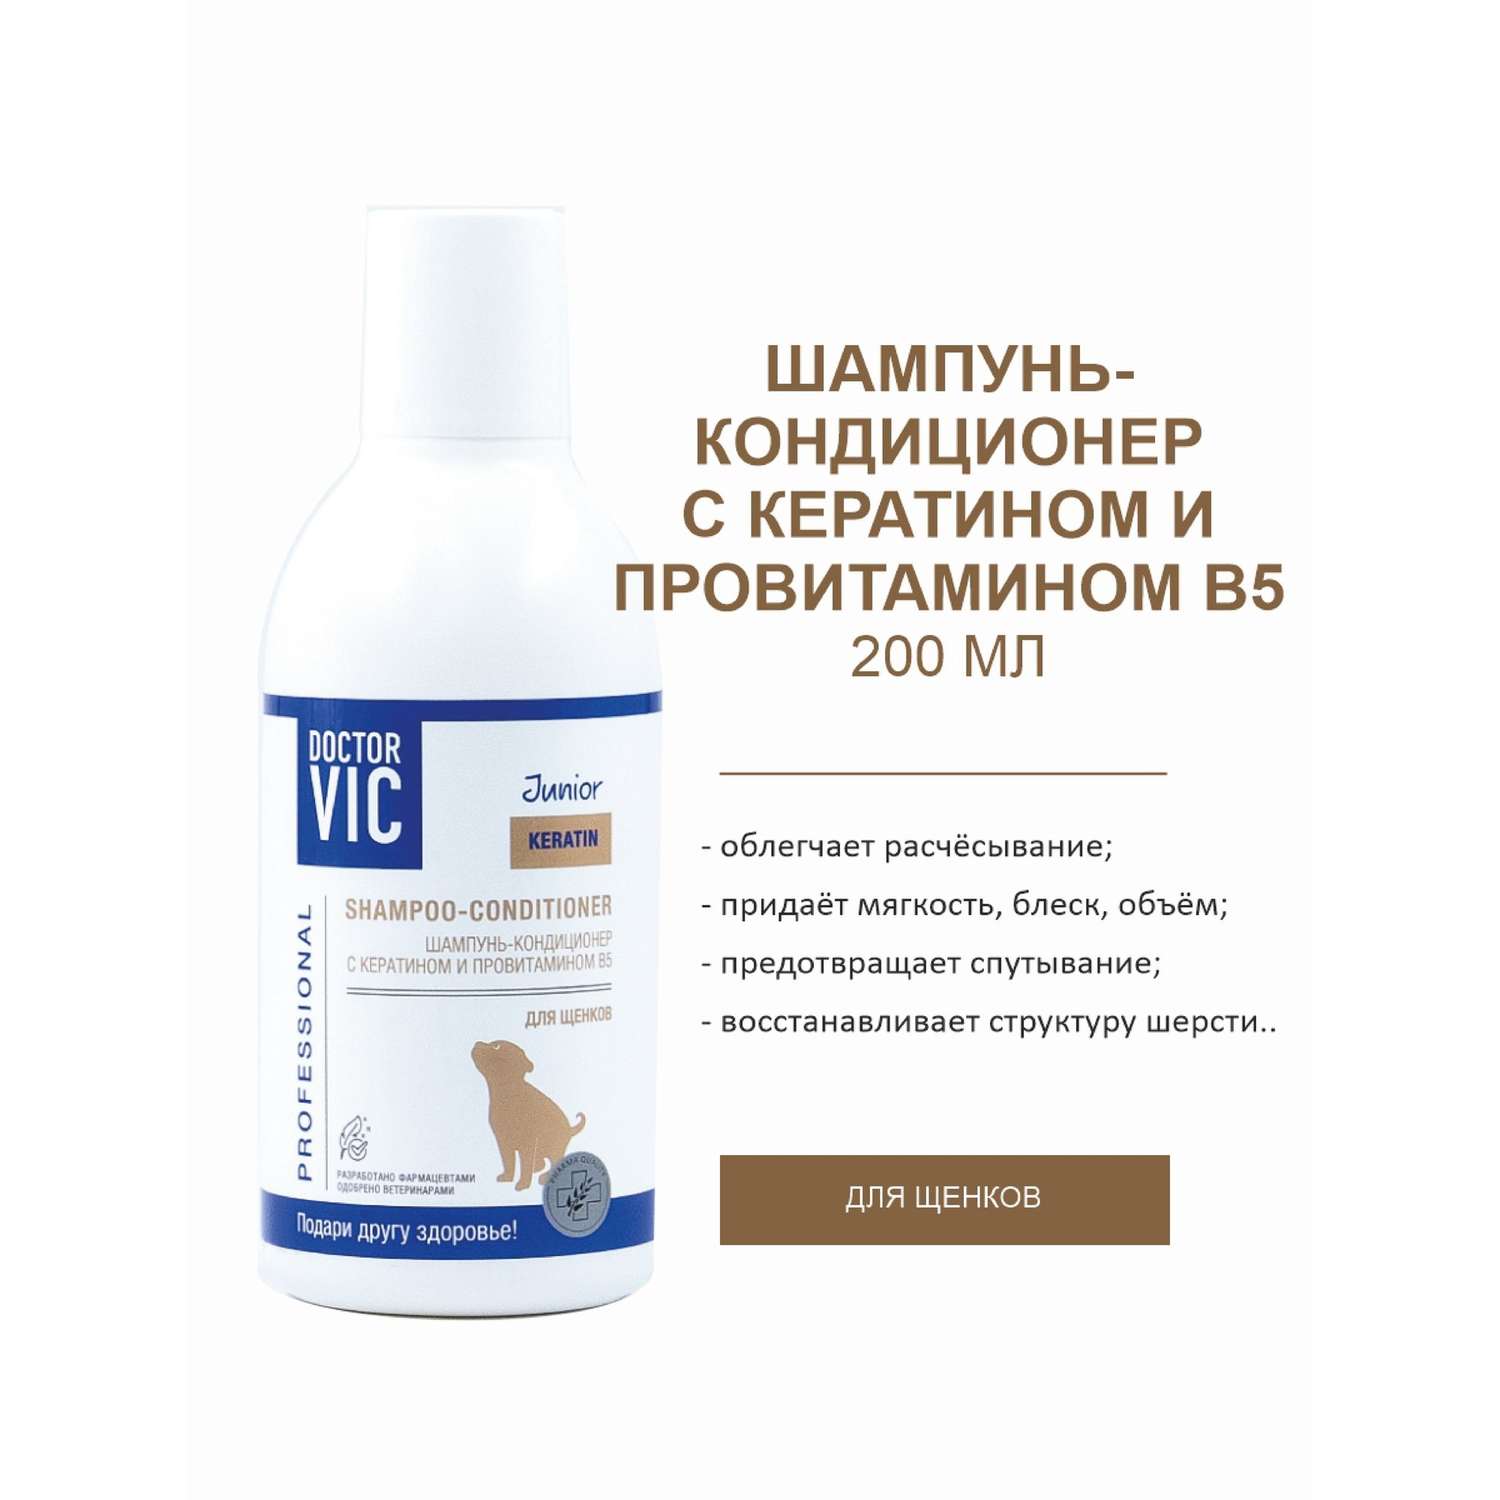 Шампунь-кондиционер для щенков Doctor VIC Professional с кератином и провитамином B5 200мл - фото 2